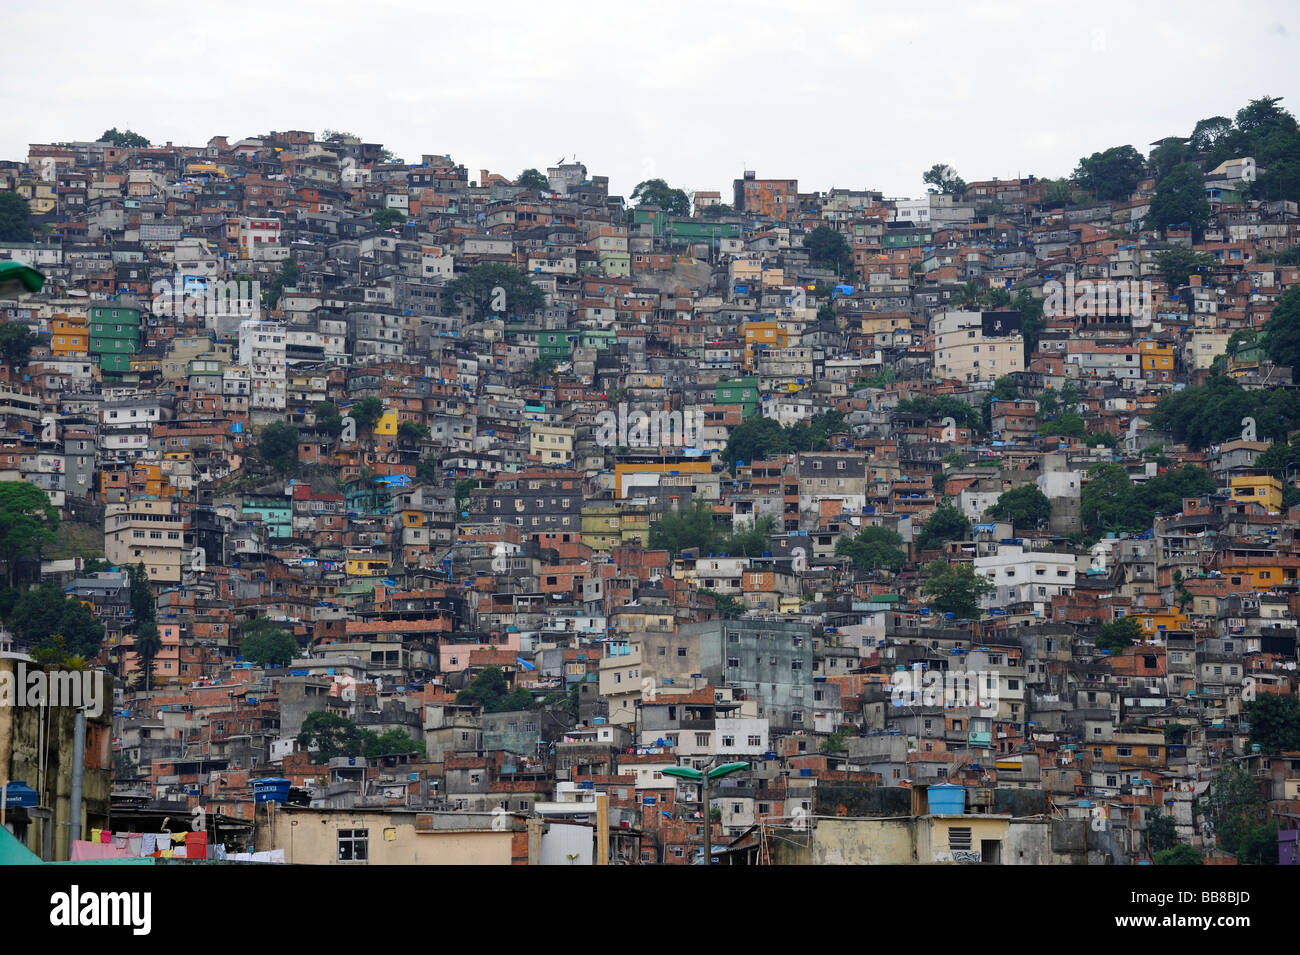 Favela in Rio de Janeiro, Brazil, South America Stock Photo